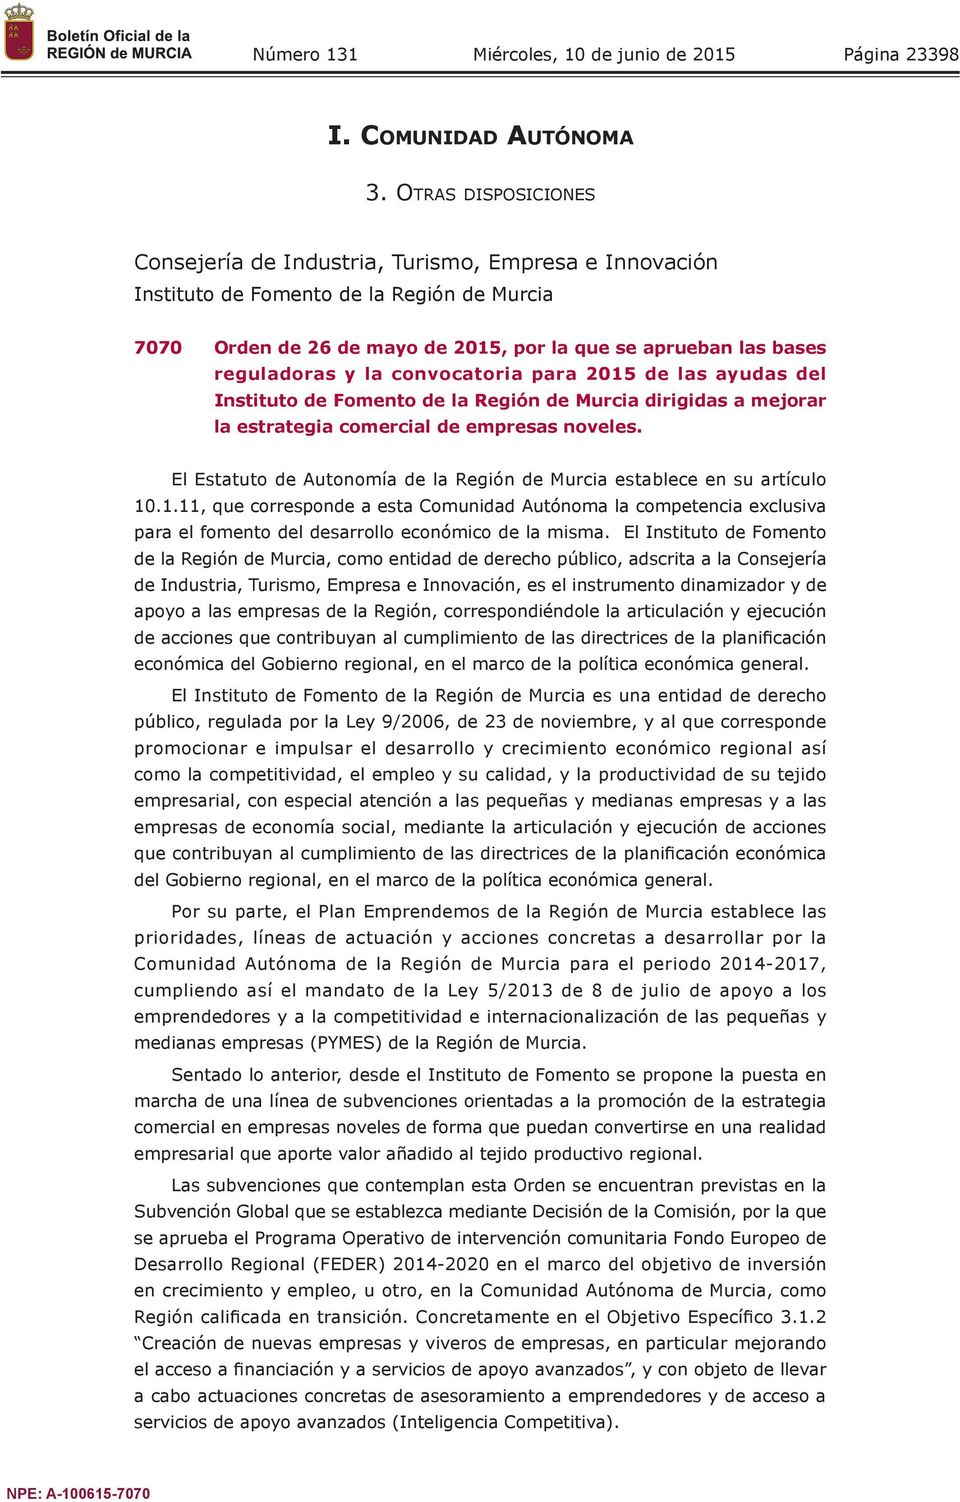 la convocatoria para 2015 de las ayudas del Instituto de Fomento de la Región de Murcia dirigidas a mejorar la estrategia comercial de empresas noveles.